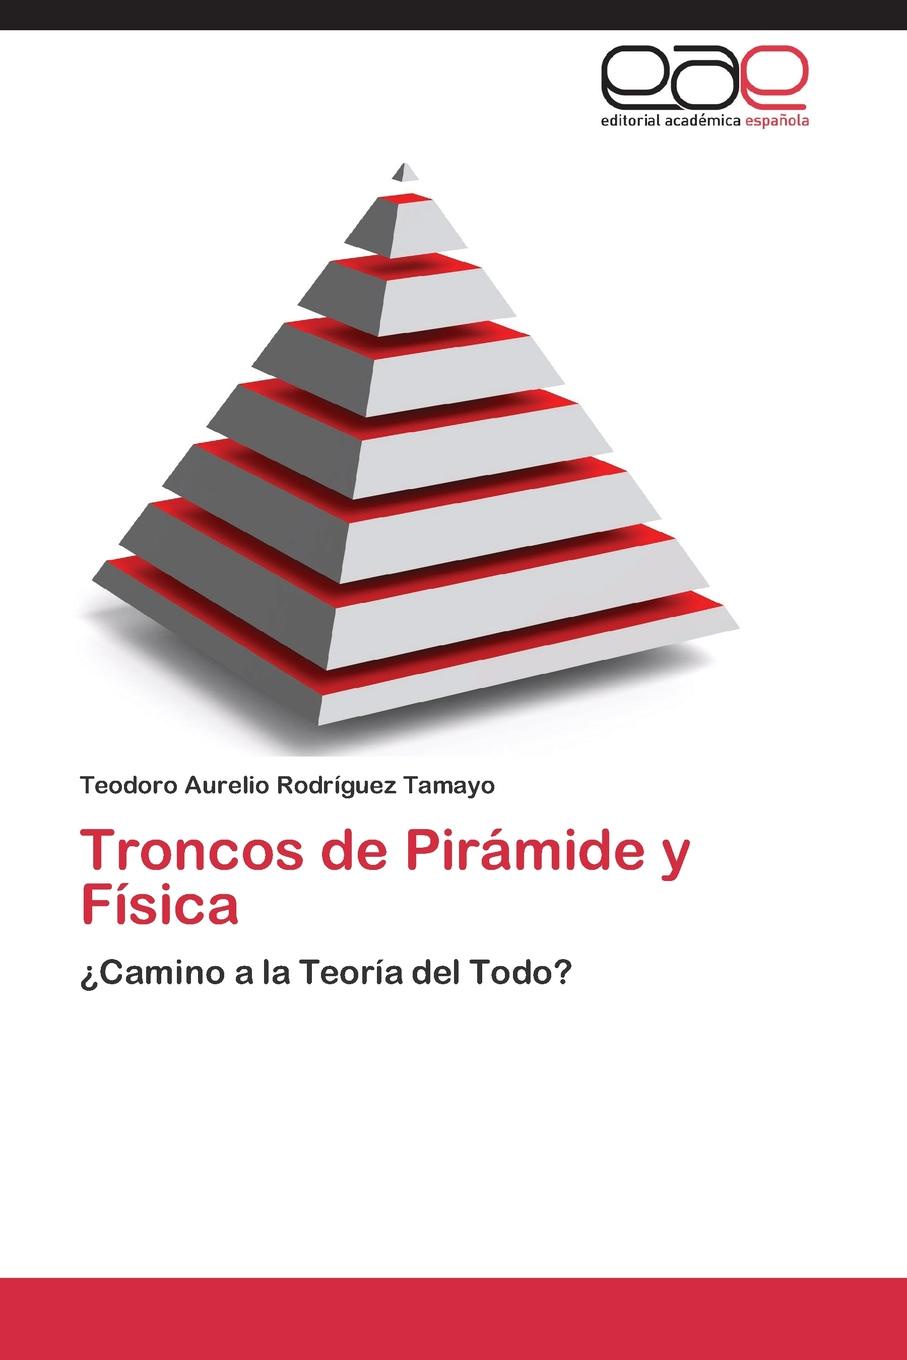 Troncos de Piramide y Fisica